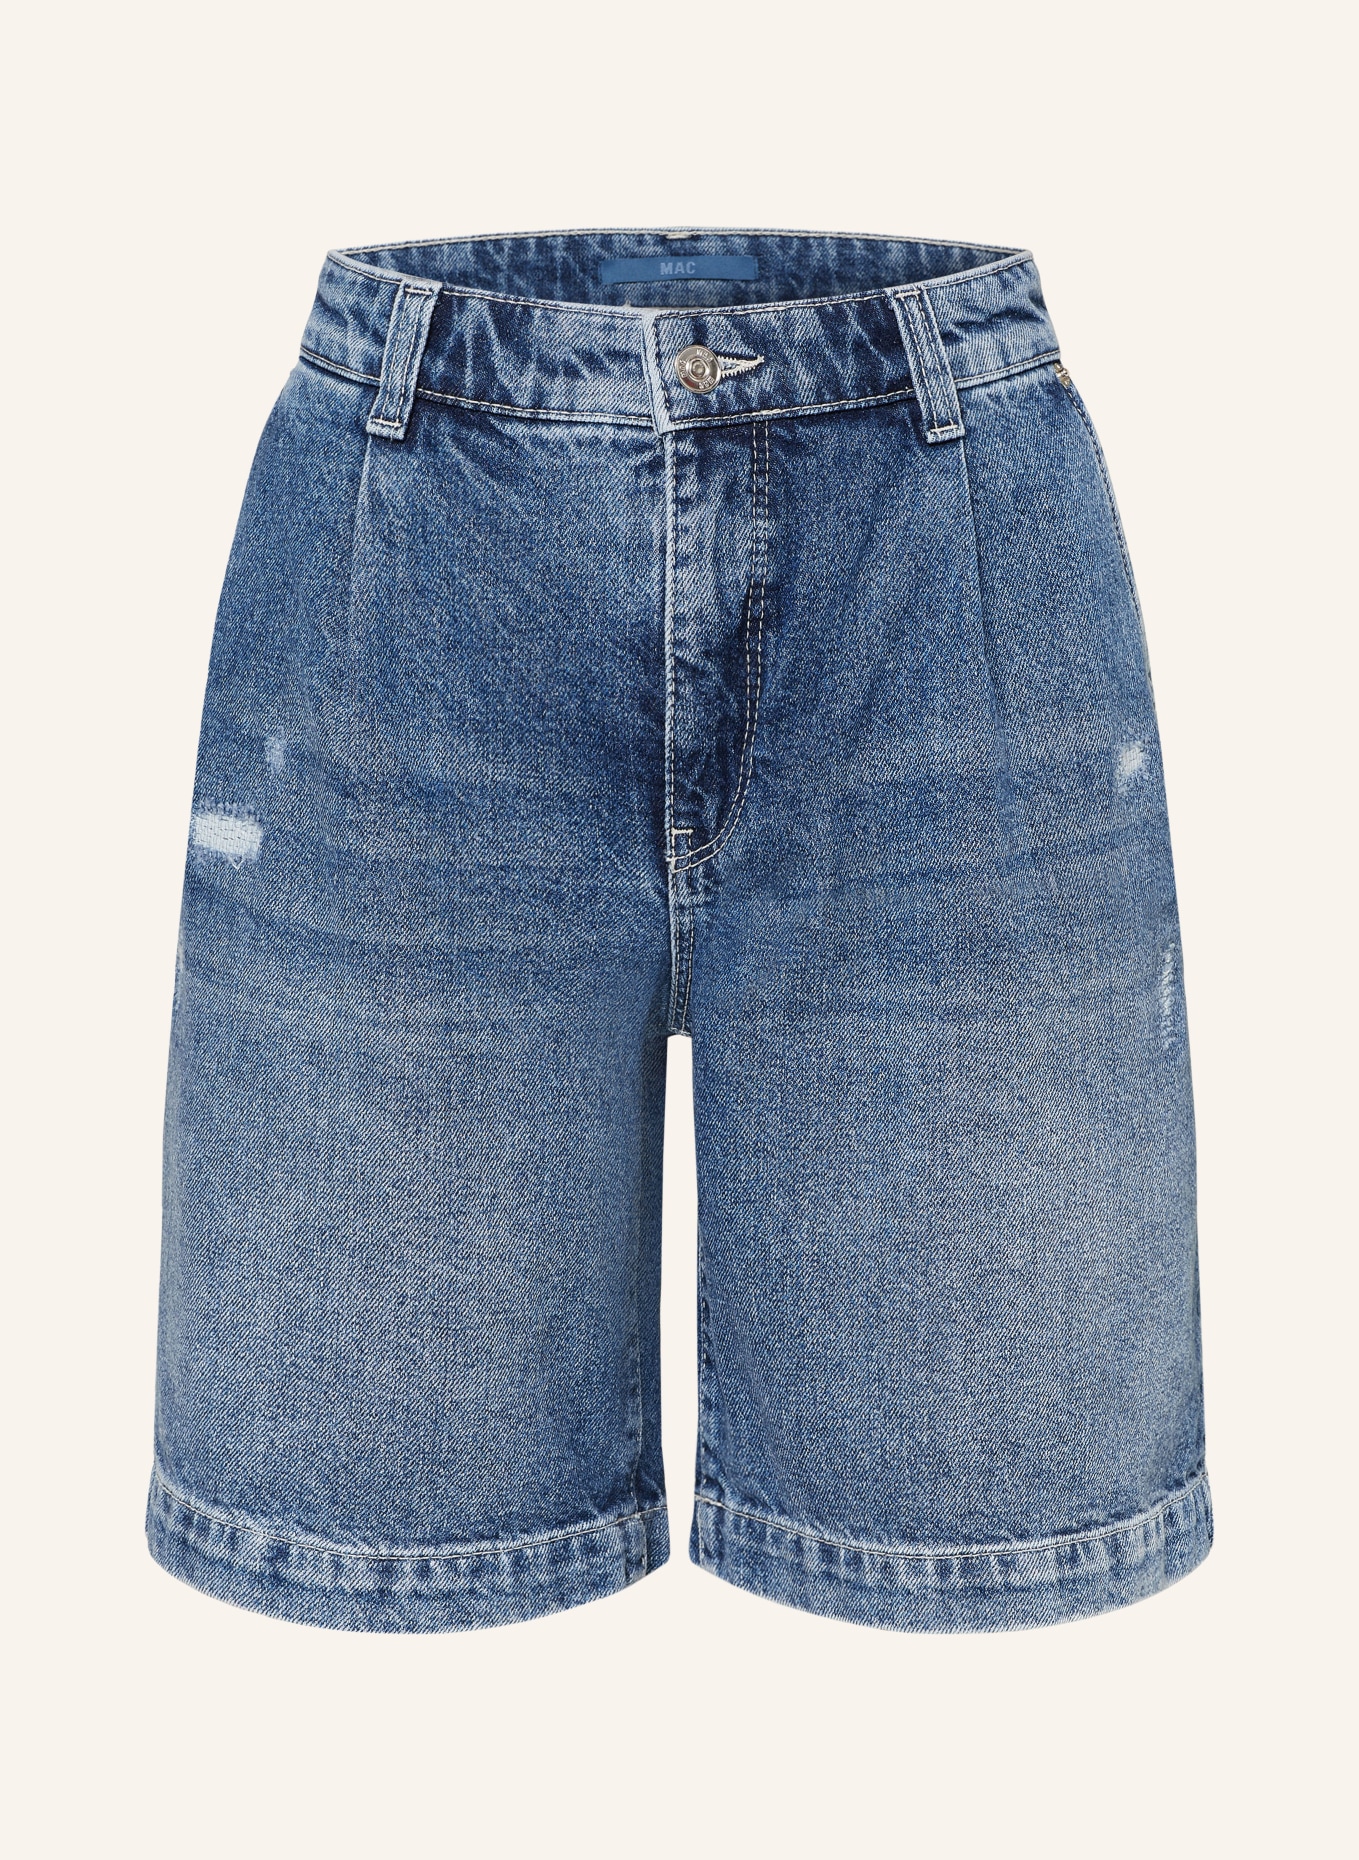 MAC Denim shorts, Color: D556 authentic distressed wash (Image 1)